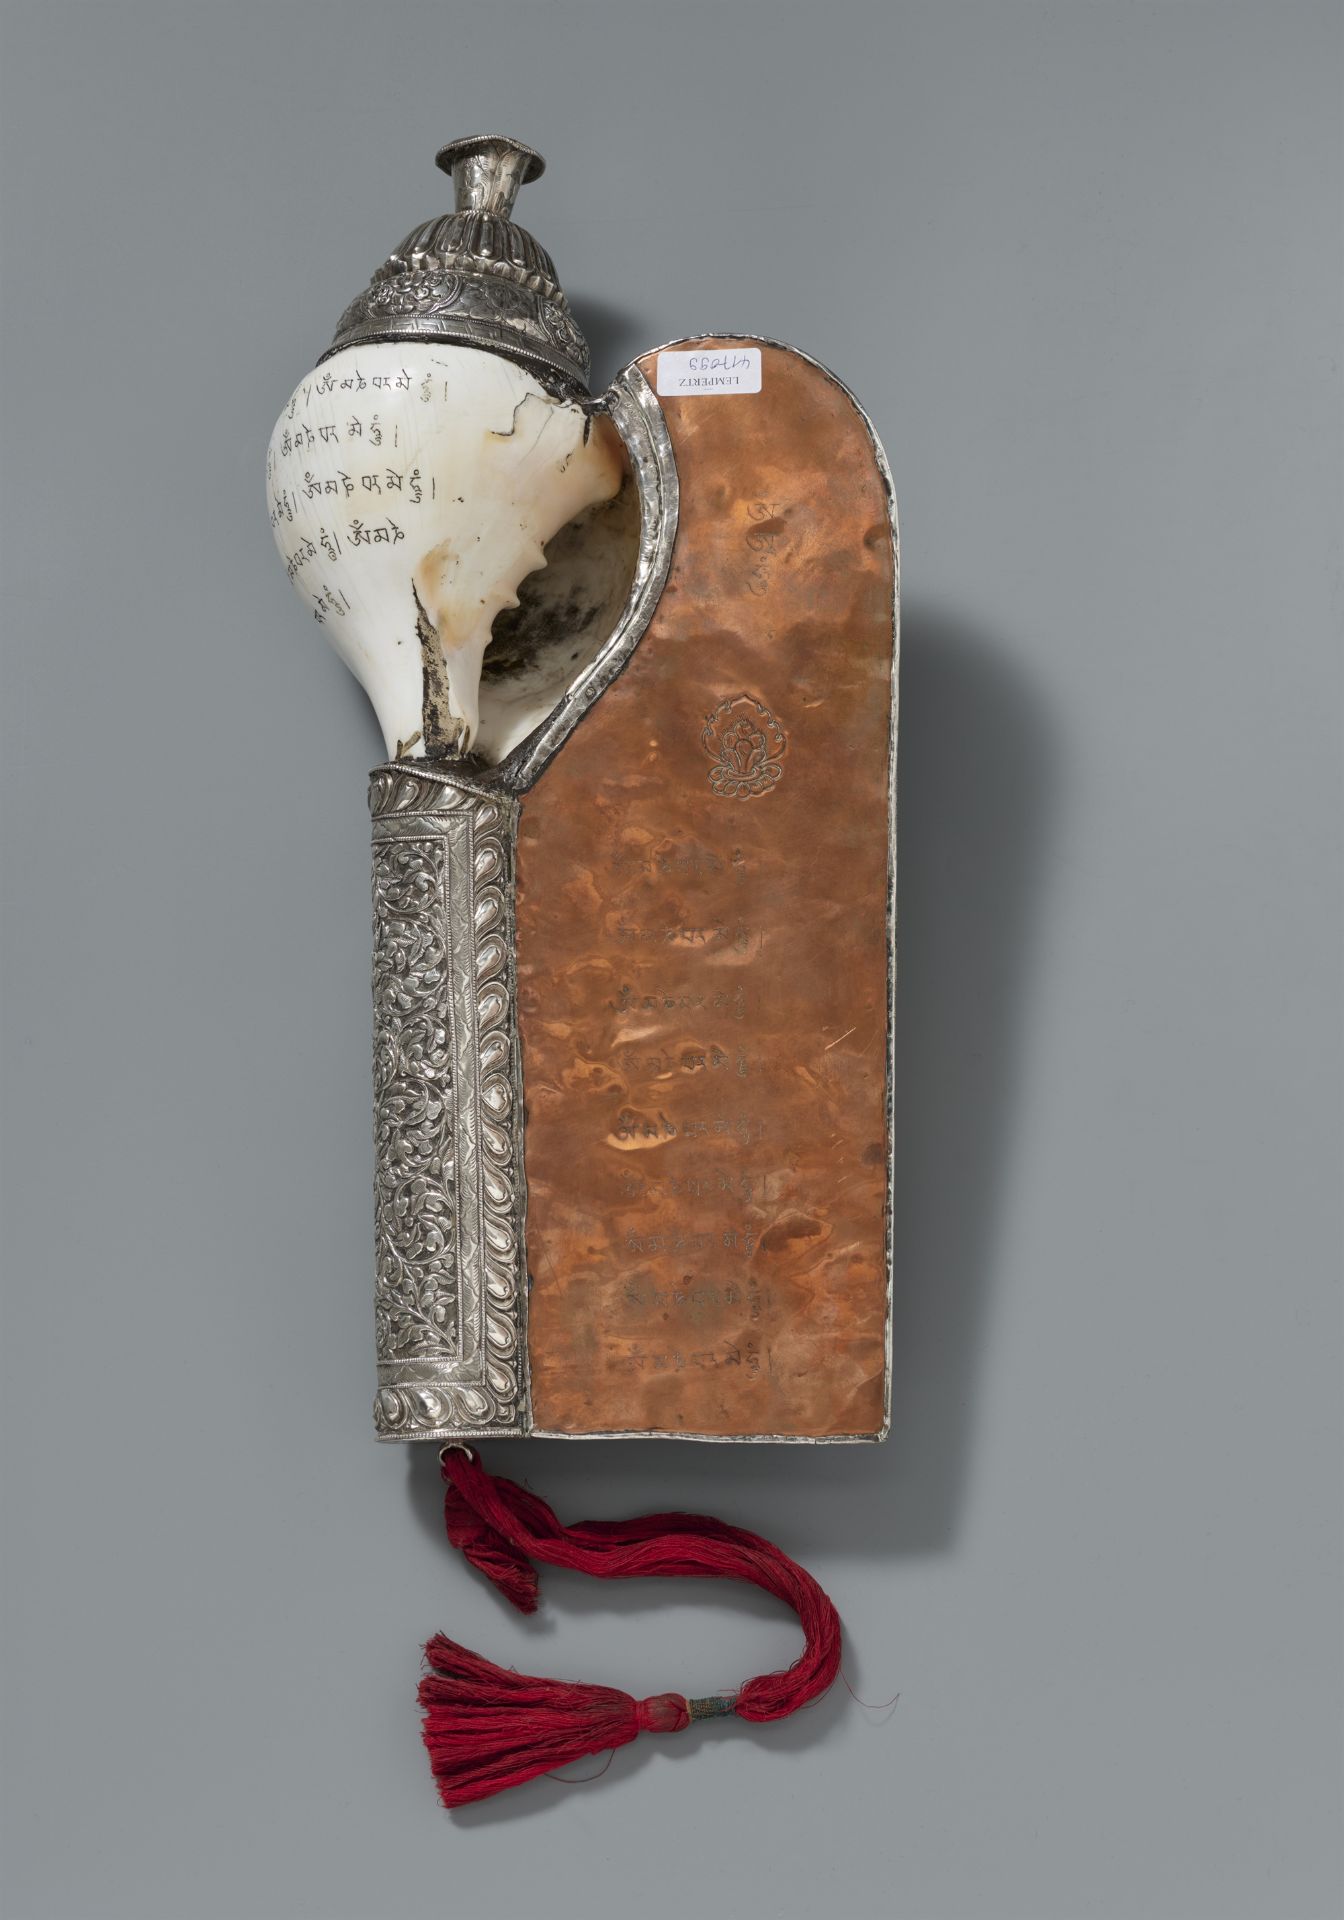 Große Meeresschneckentrompete (dung dkar) mit Inschrift und Silbermontierung. Tibet, 18./19. Jh. - Bild 2 aus 2